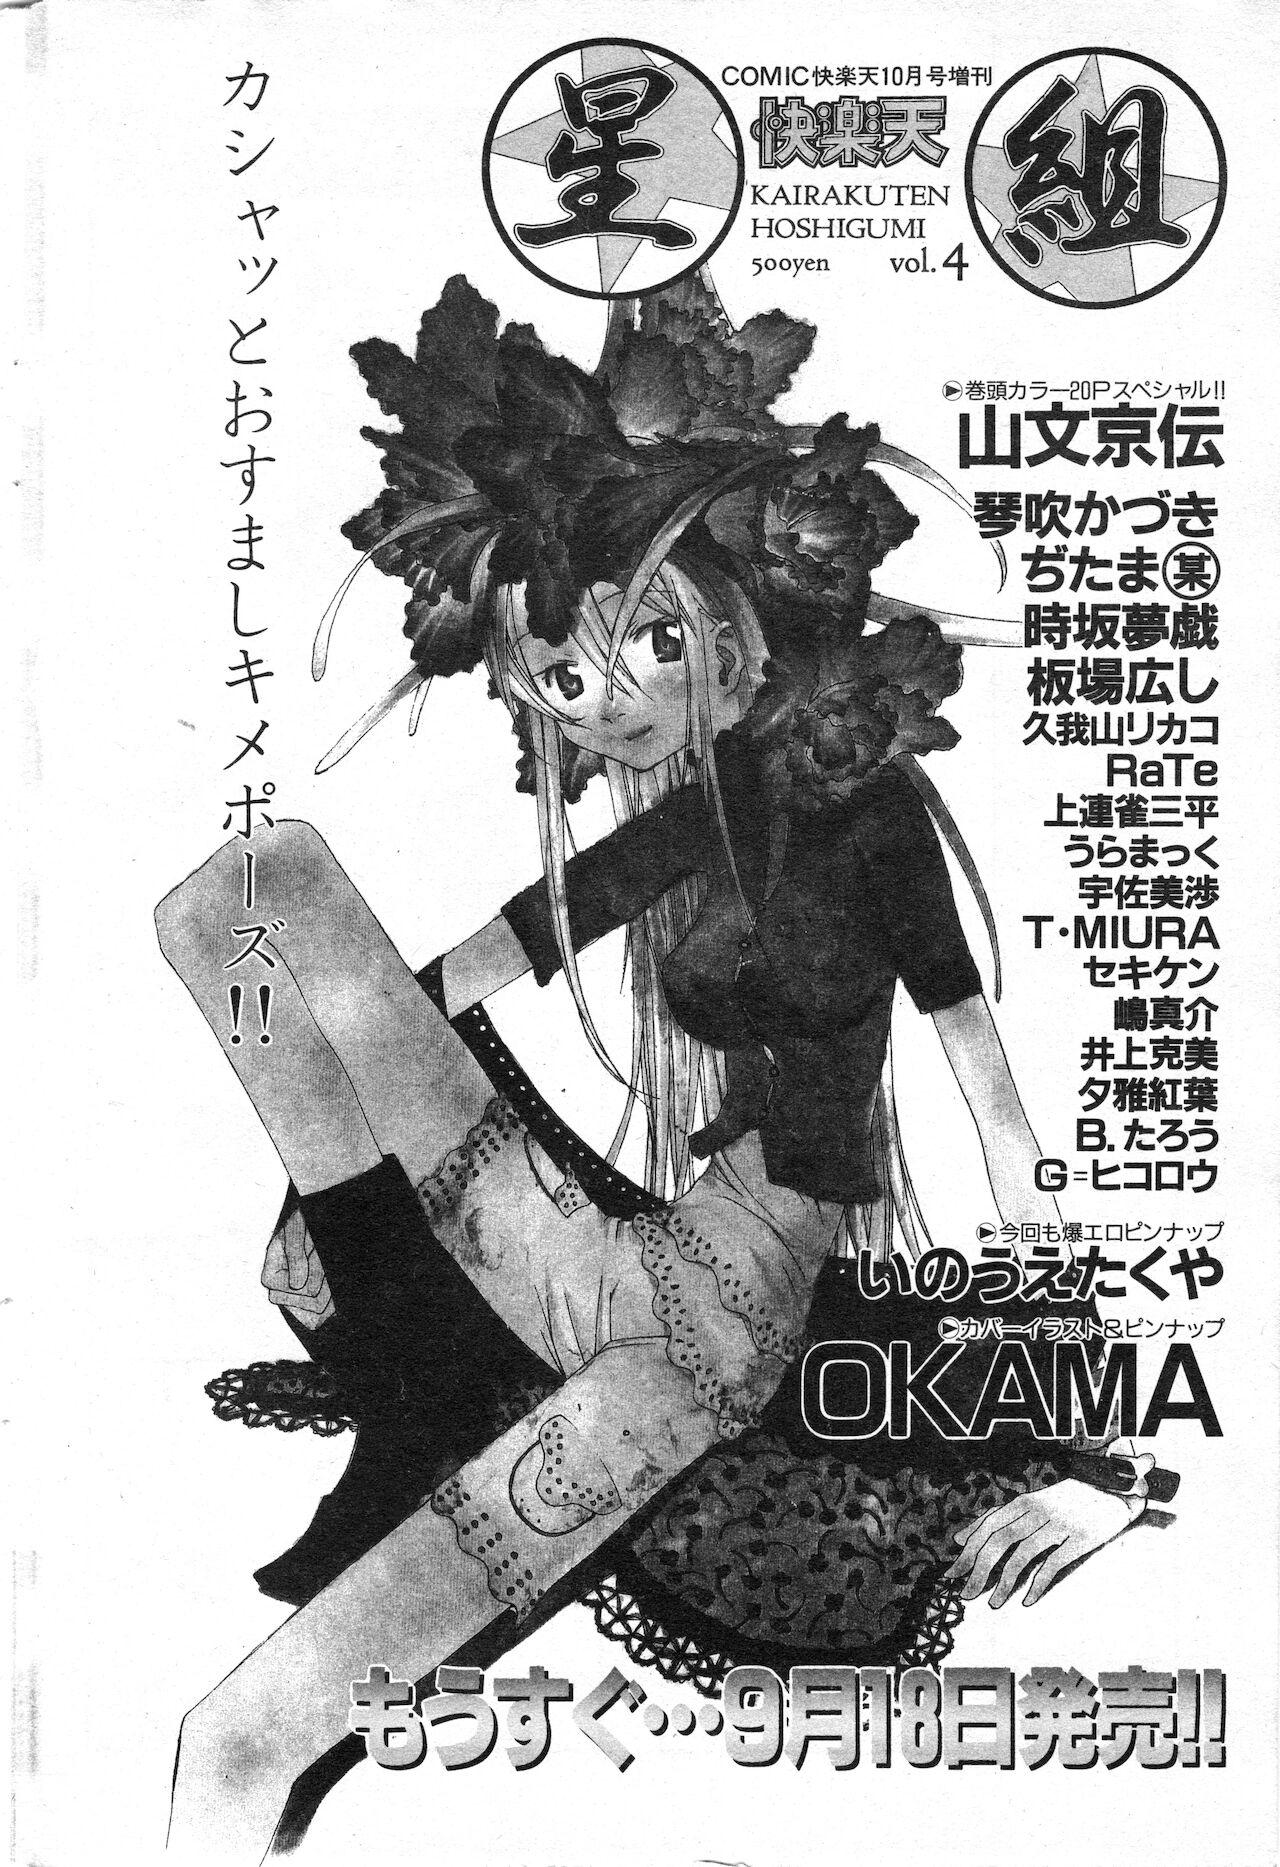 COMIC Kairakuten 10.1998 67